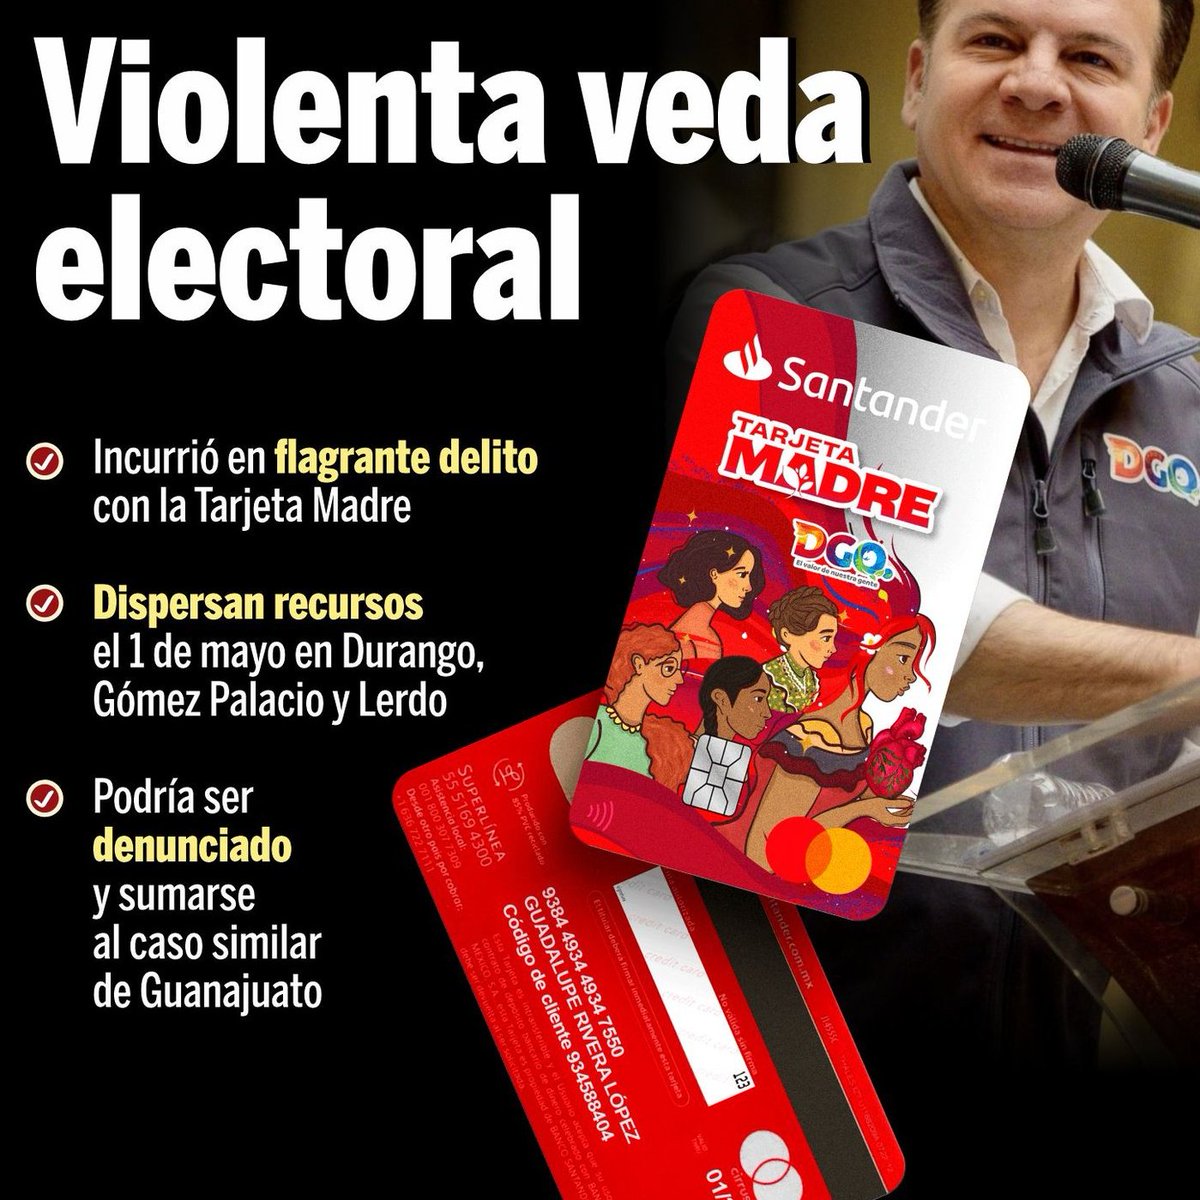 Así las cosas con Estebandido, su partido no sabe ganar sin hacer trampas 😡 ¡ La de siempre! #Durango #Elecciones2024 #Corrupcion